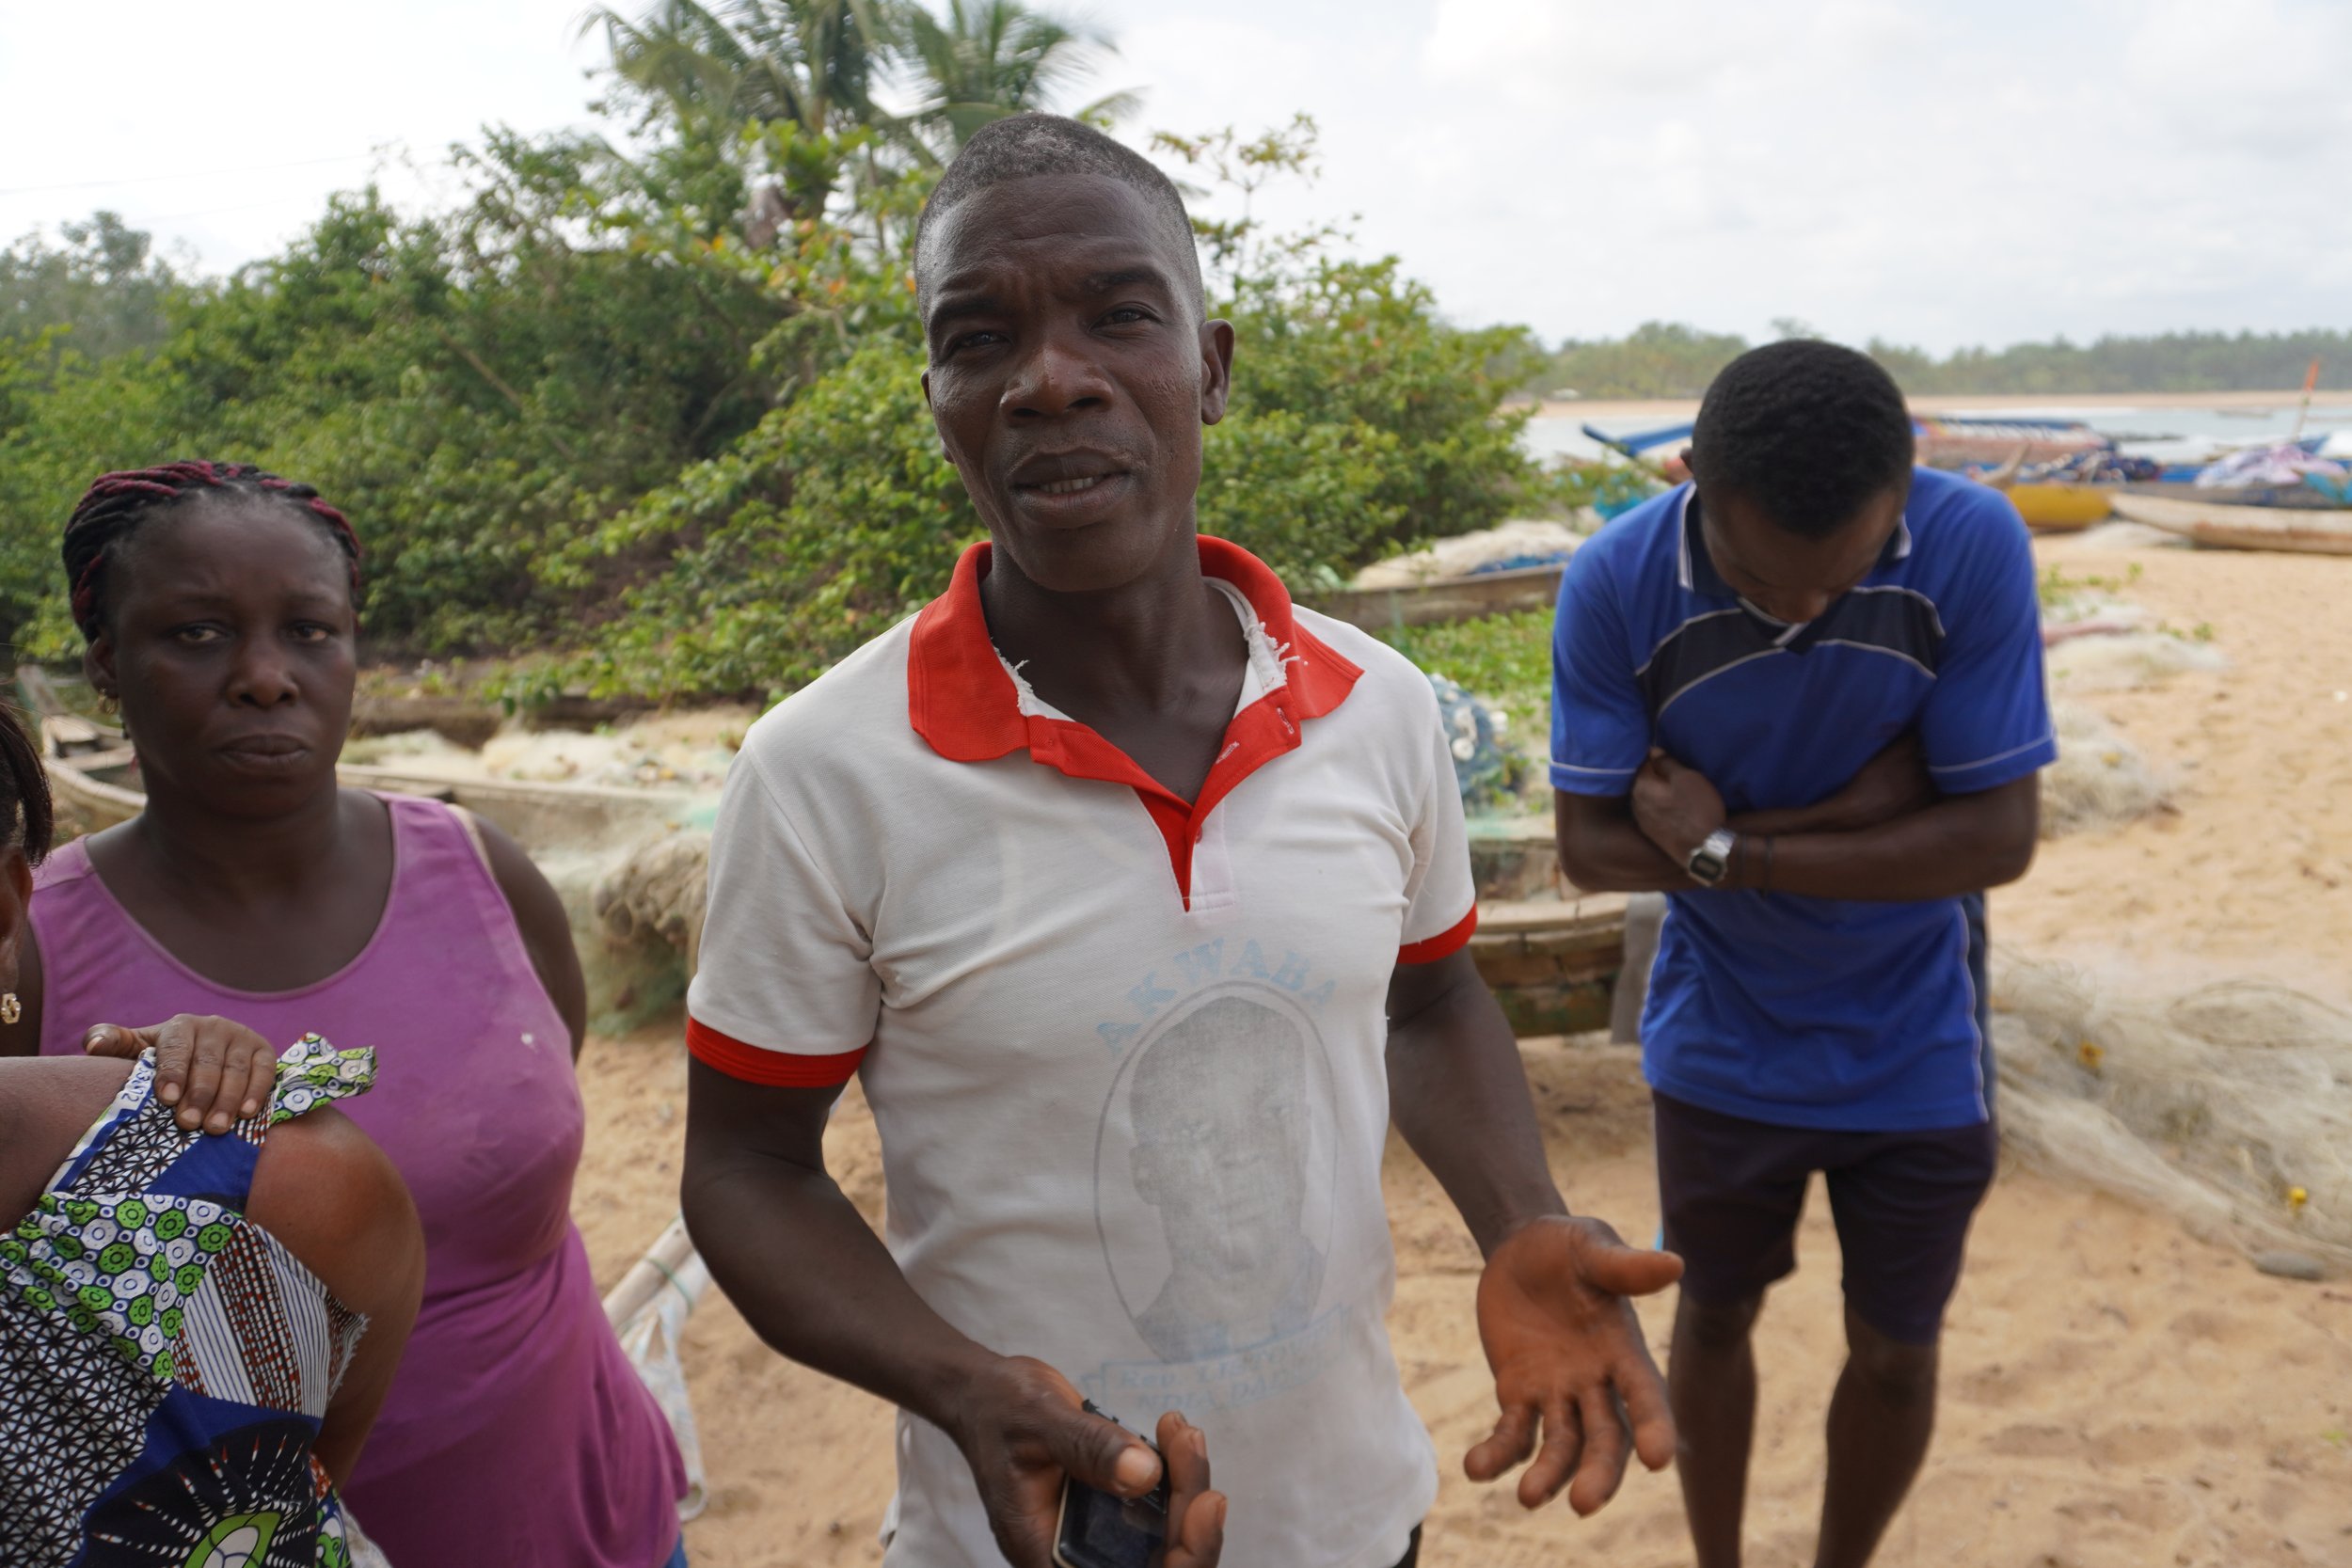  Wèh Assié, chef pêcheur de Dawa, d’origine libérienne, explique que les dures conditions de travail en mer les empêchent de partir tous les jours, ce qui est pour lui un gain manqué. Aujourd’hui, lui, il se repose.  